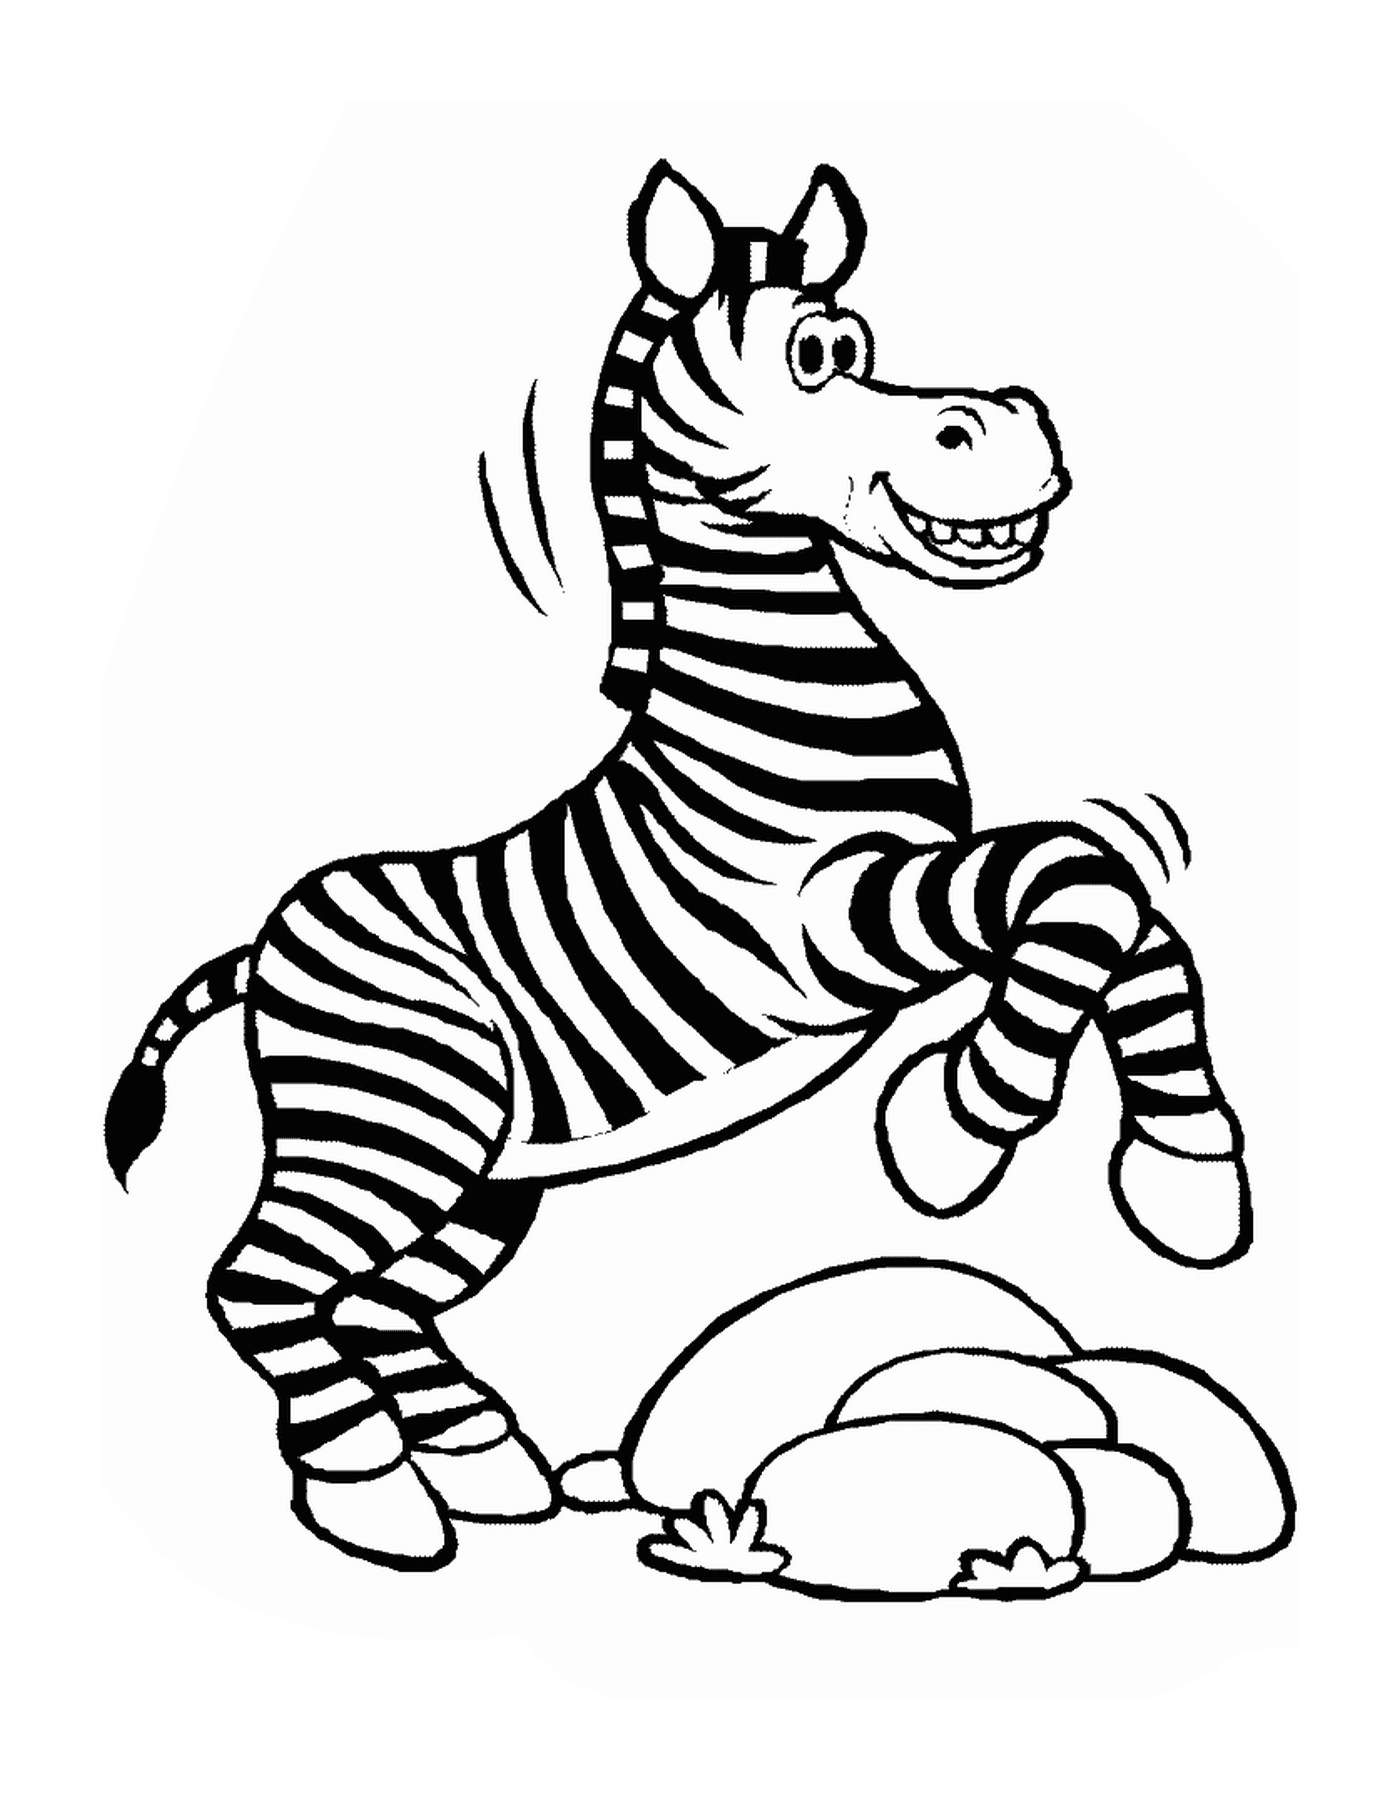  Zebra springen in die Luft 